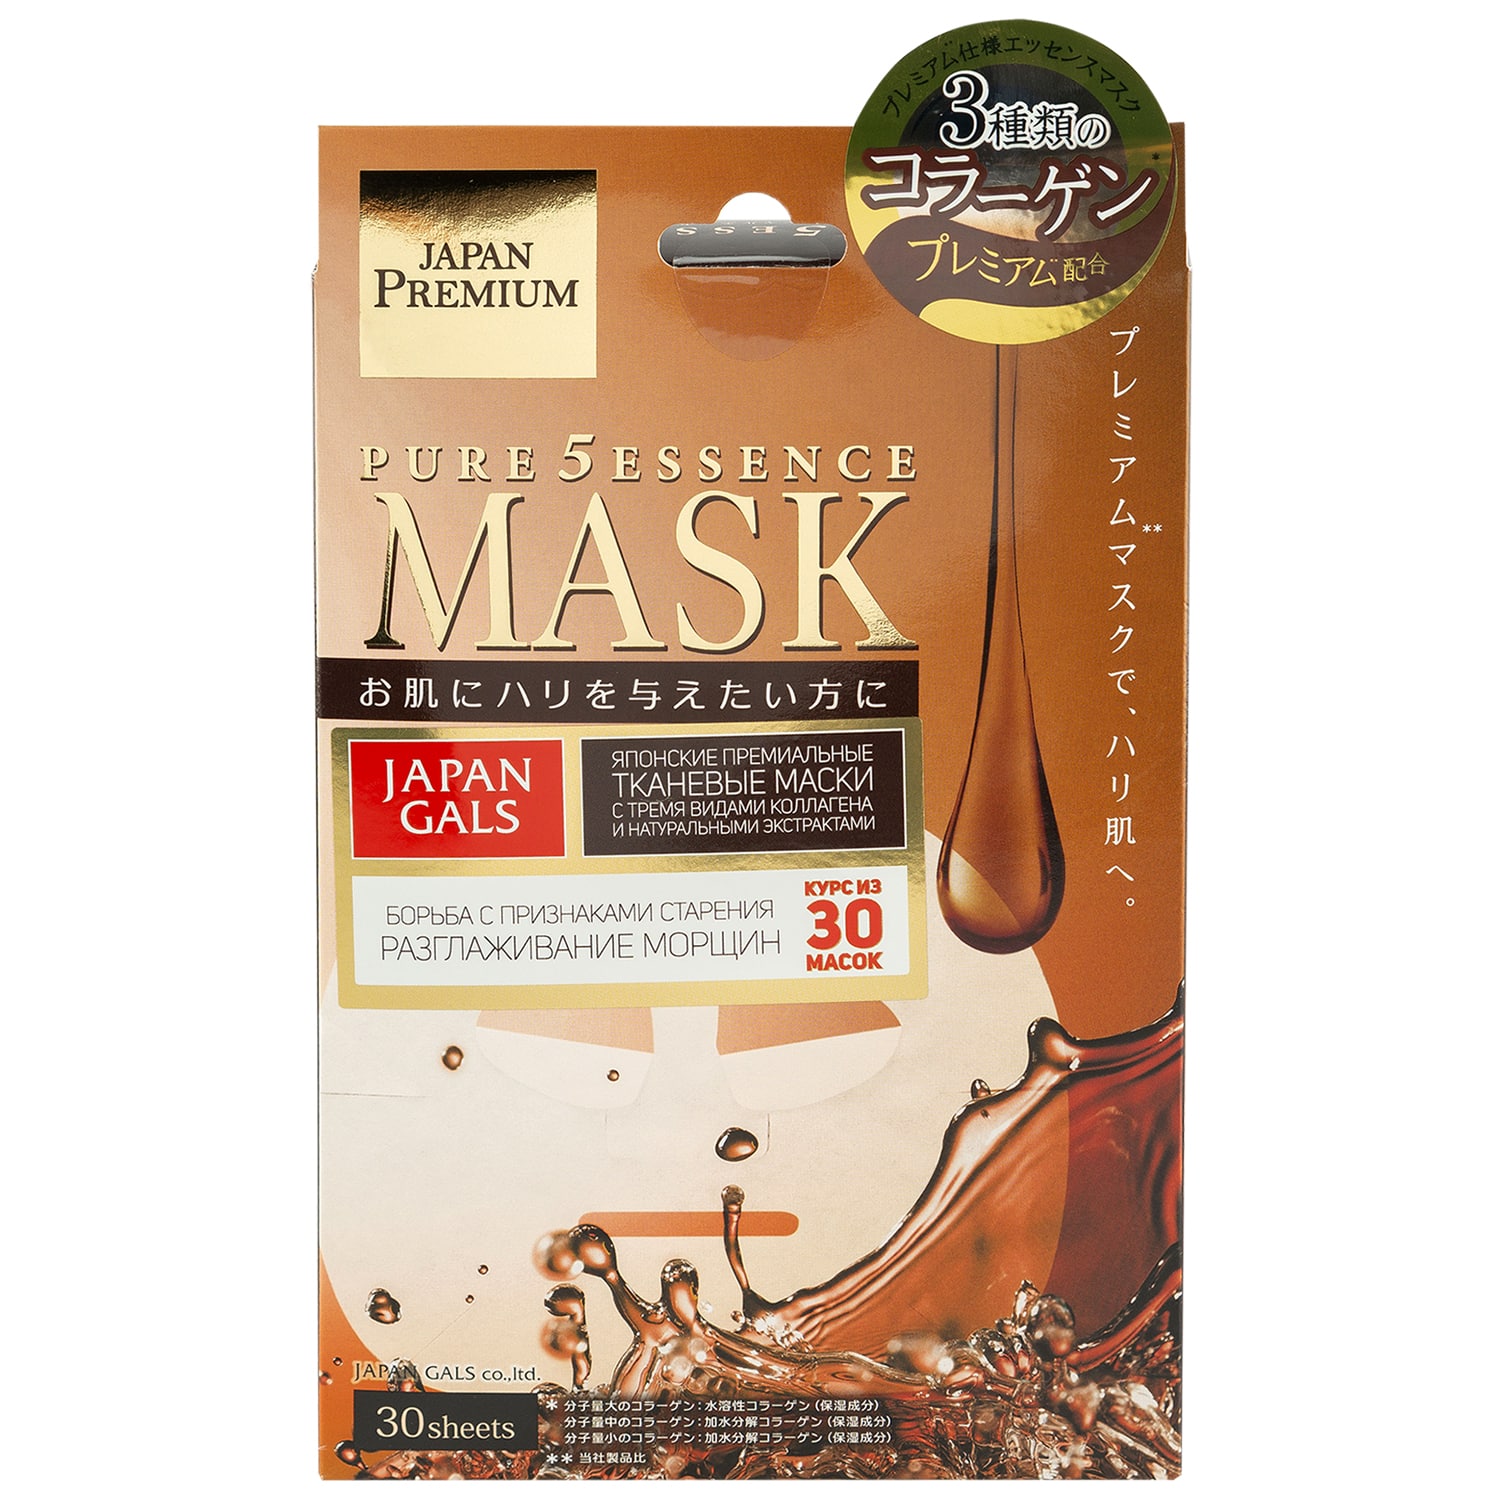 Japan Gals Маска для лица c тремя видами коллагена Essence Premium, 30 шт (Japan Gals, Pure5) маска для лица c тремя видами коллагена 30 шт japan gals pure5 essence premium 30 шт